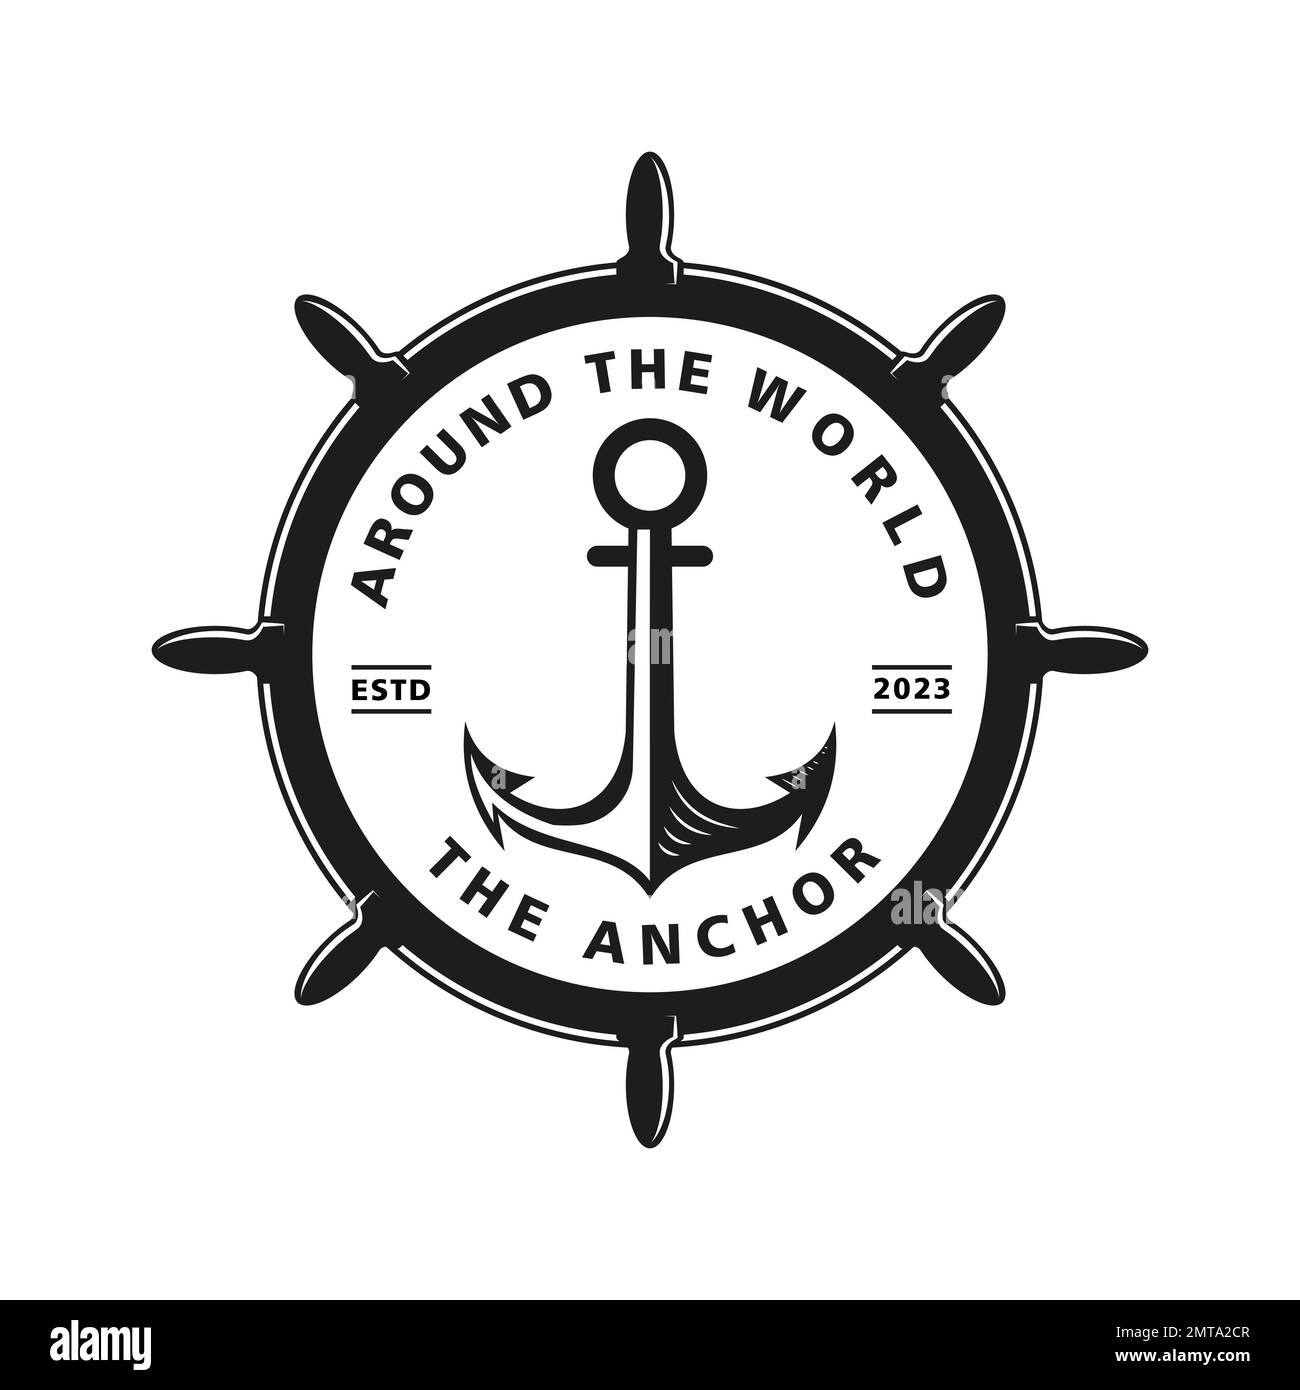 Vintage Retro Country Emblem Anchor Ship Badge Vector Logo, Illustration Vintage Design of Water Transportation Concept, emblem, symbol, sign, badge, Stock Vector